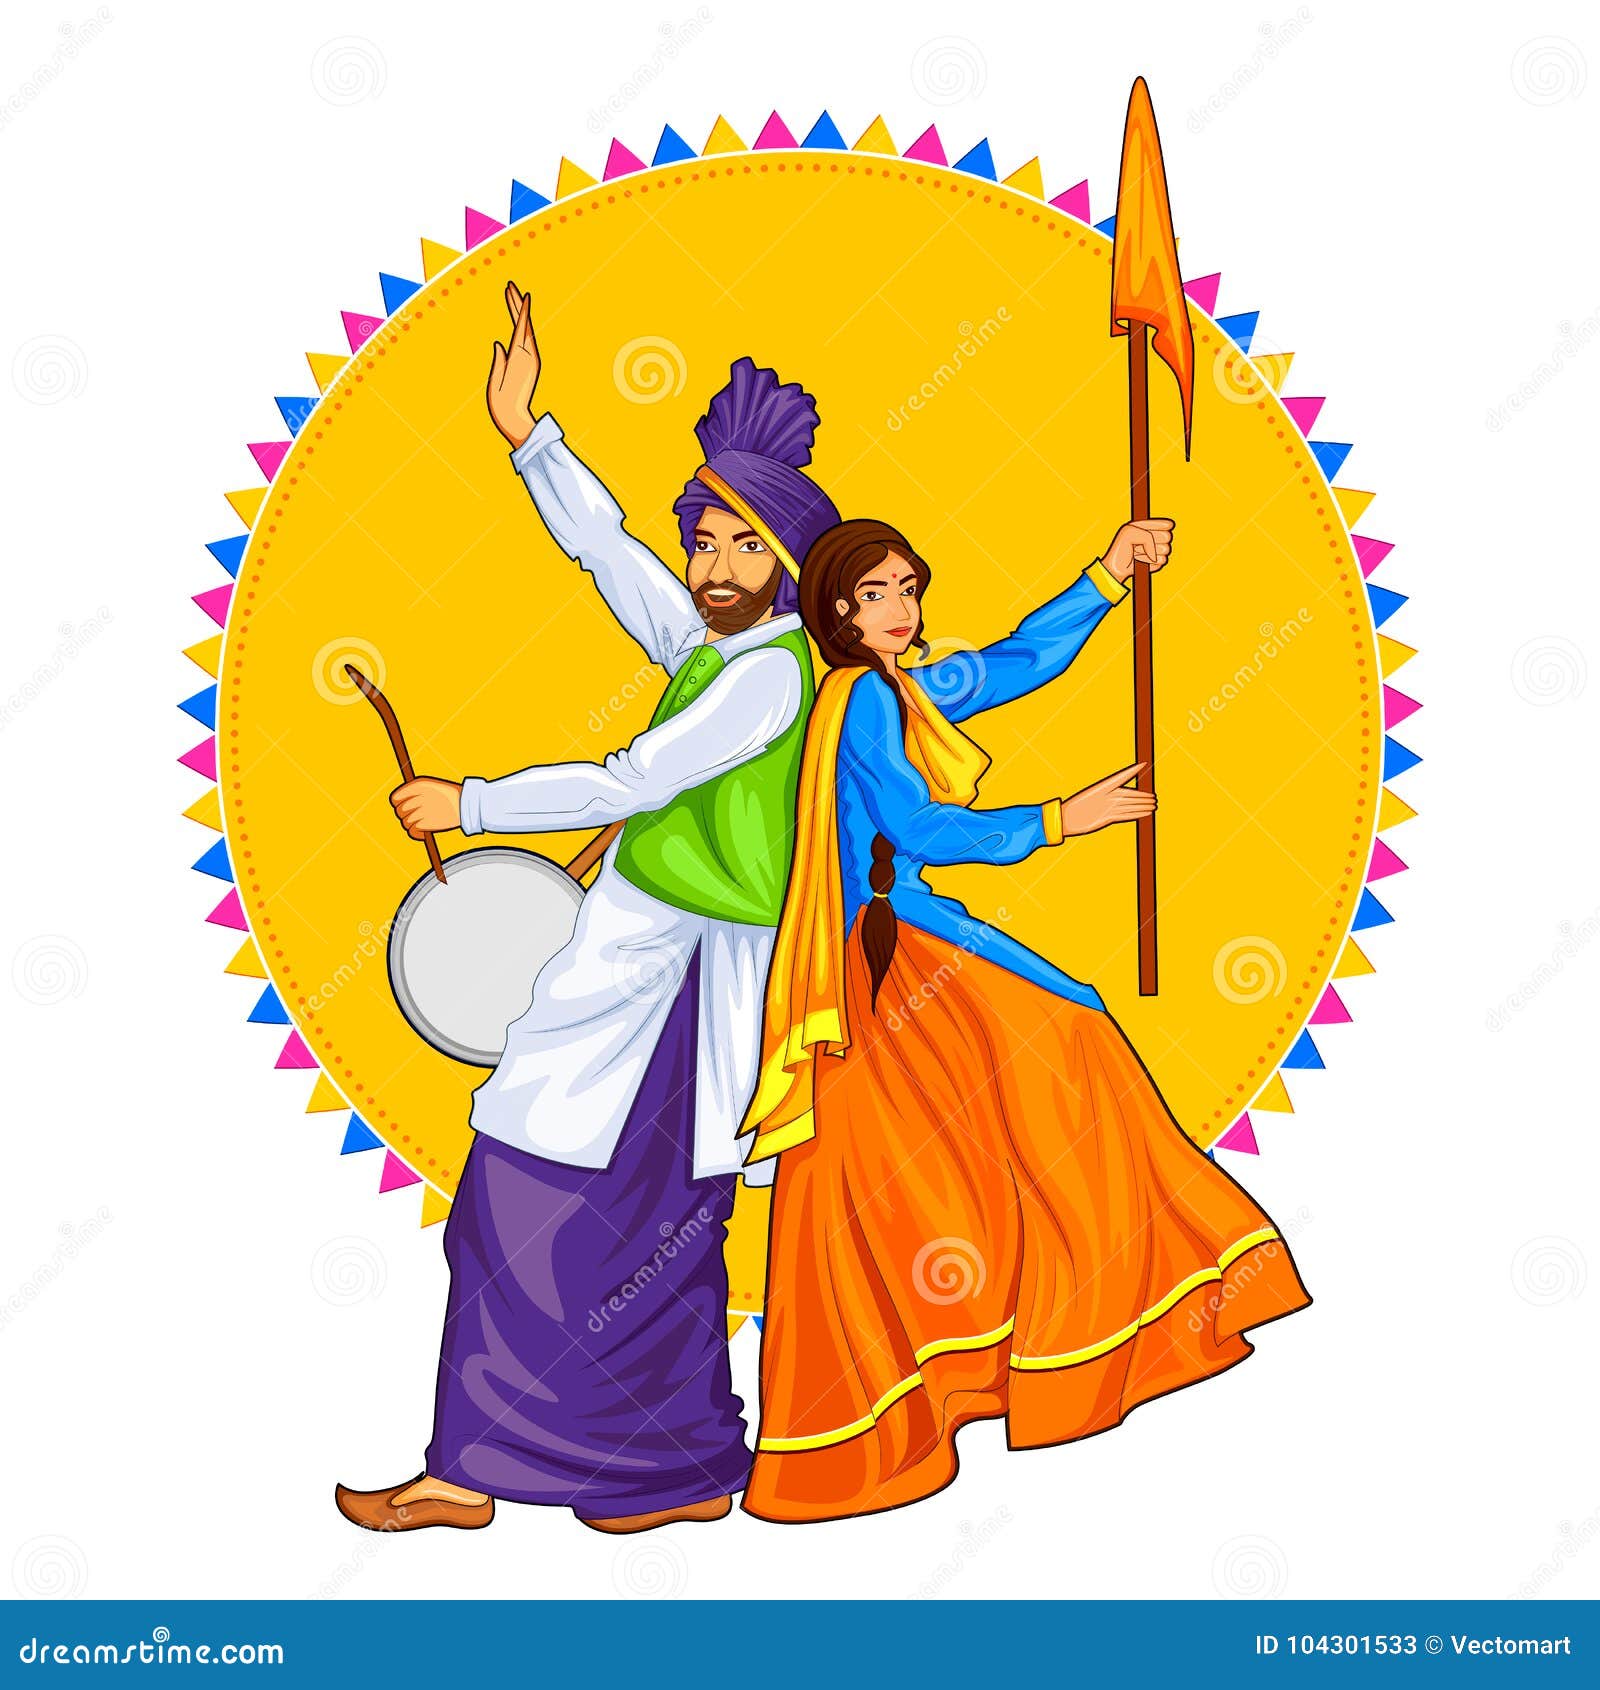 illustration-sikh-punjabi-sardar-couple-playing-dhol-dancing-bhangra-holiday-like-lohri-vaisakhi-sikh-punjabi-sardar-104301533.jpg